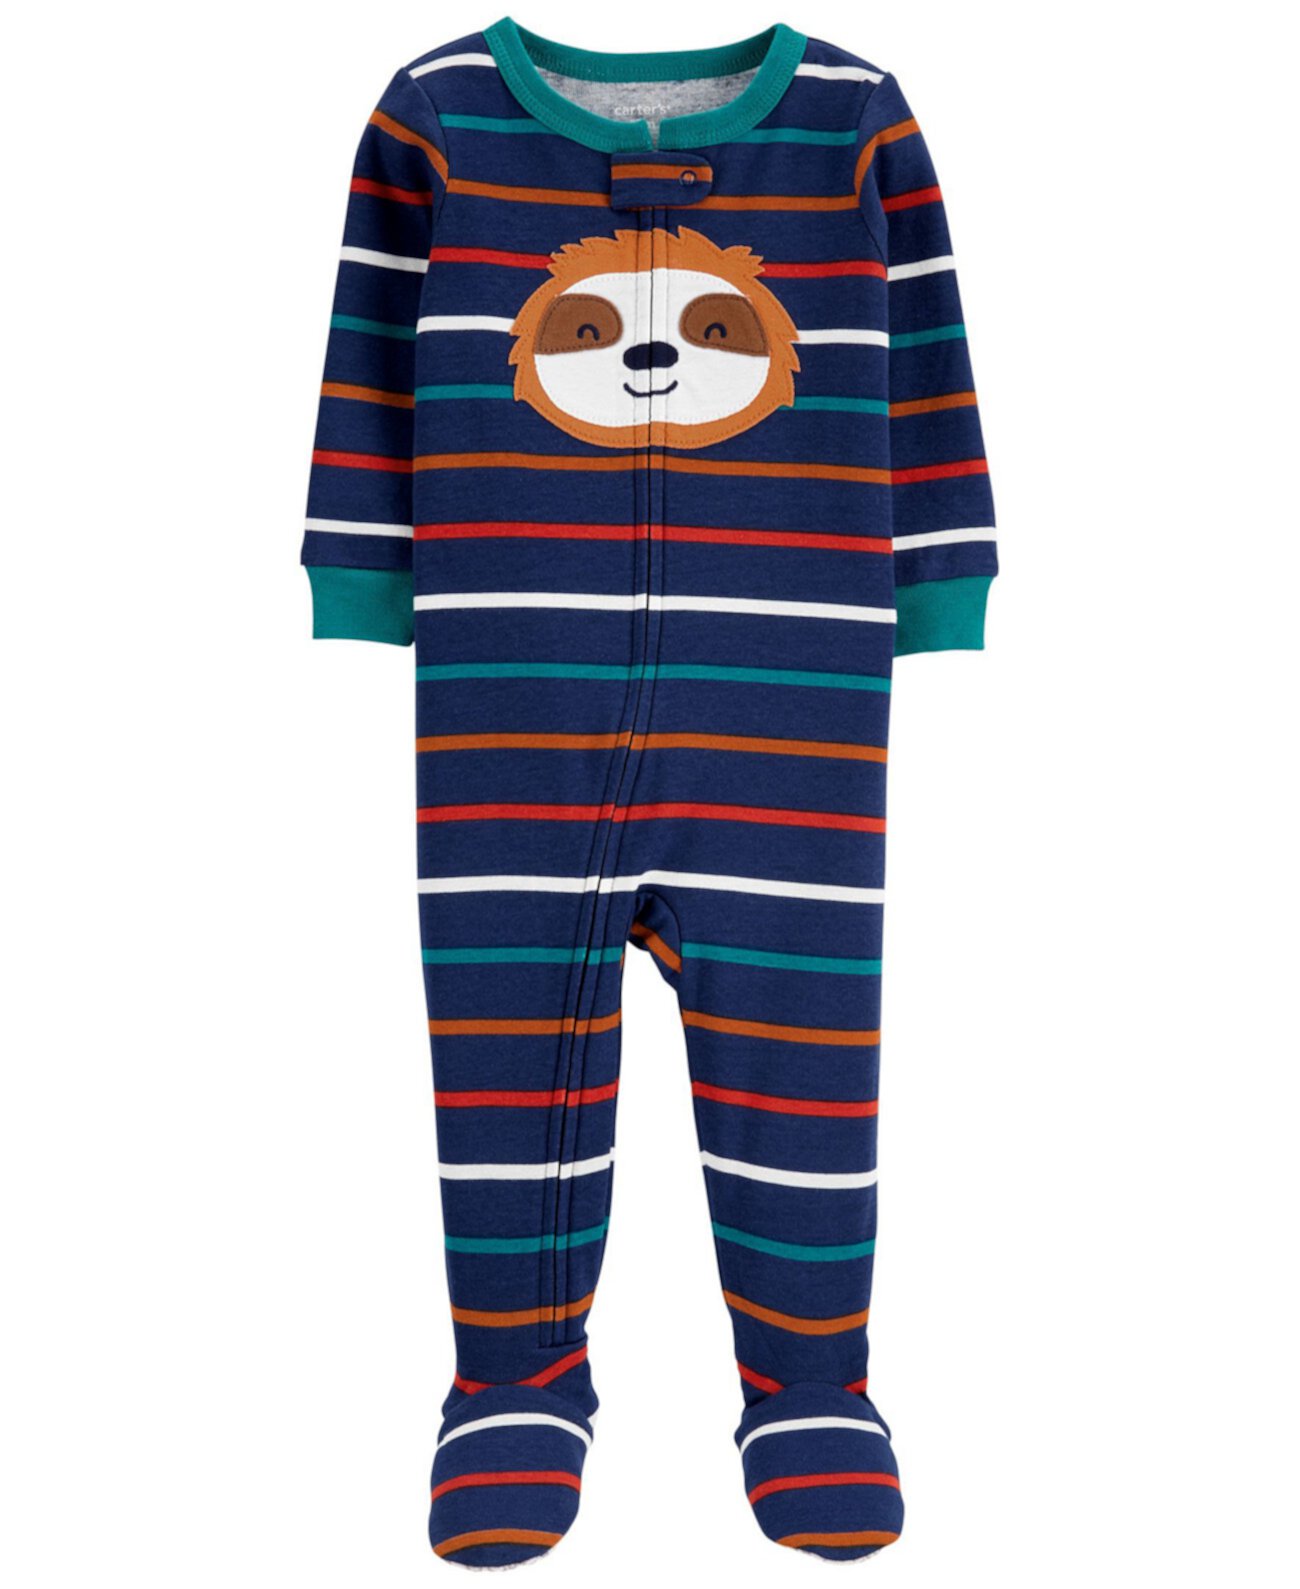 Цельнокроеная пижама из хлопка Footie для малышей Sloth Snug Fit Carter's